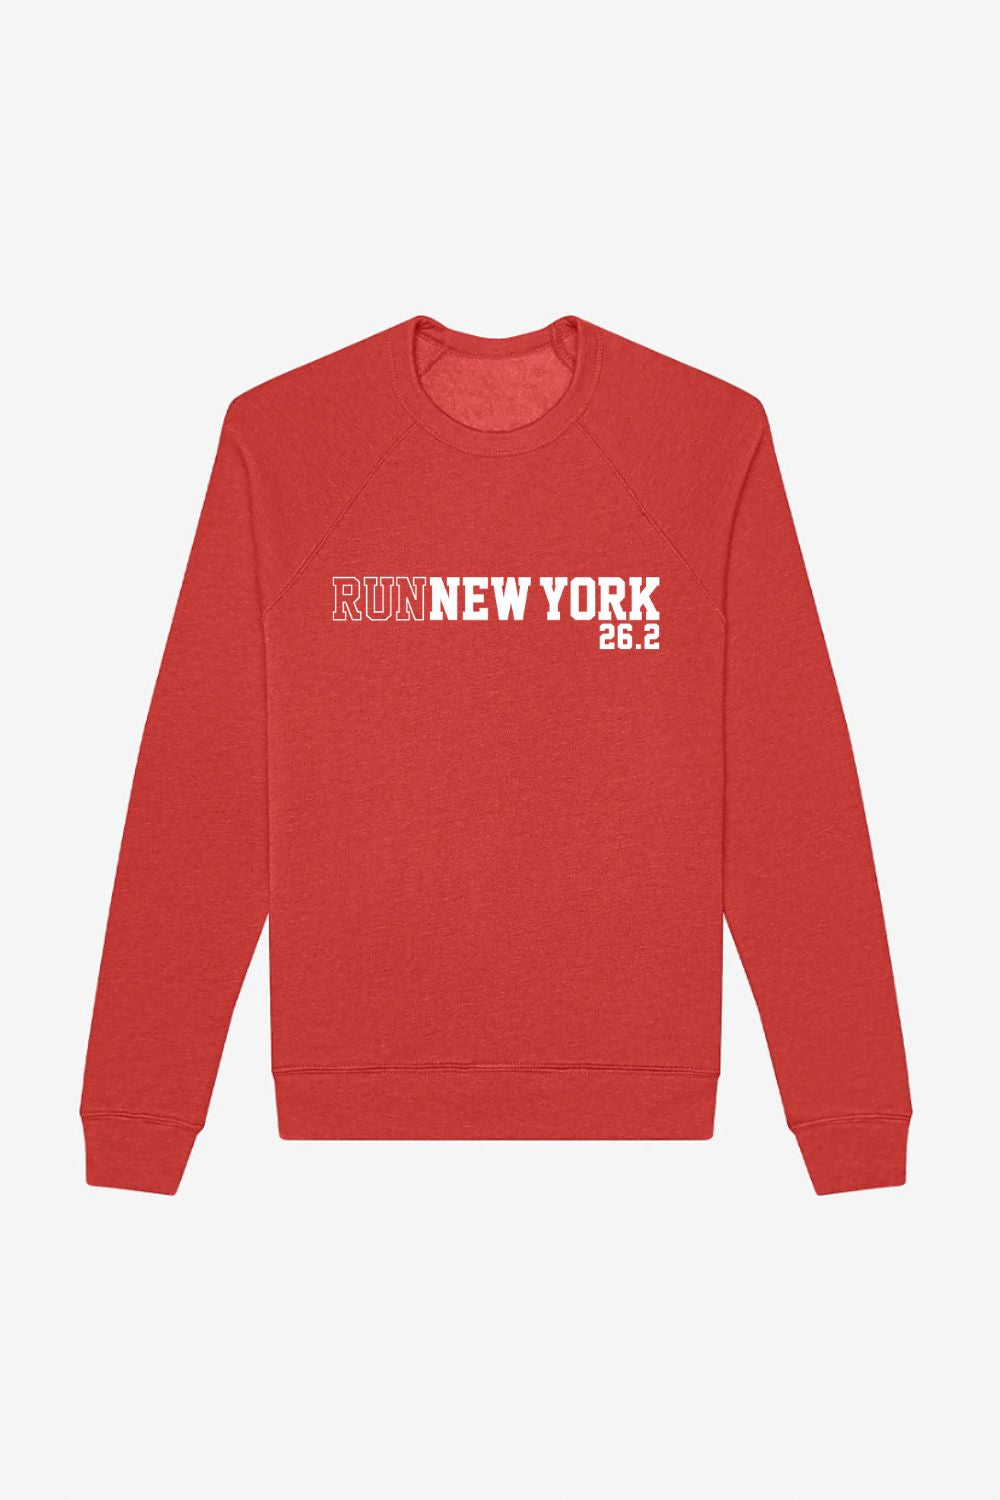 Run New York 26.2 Sweatshirt